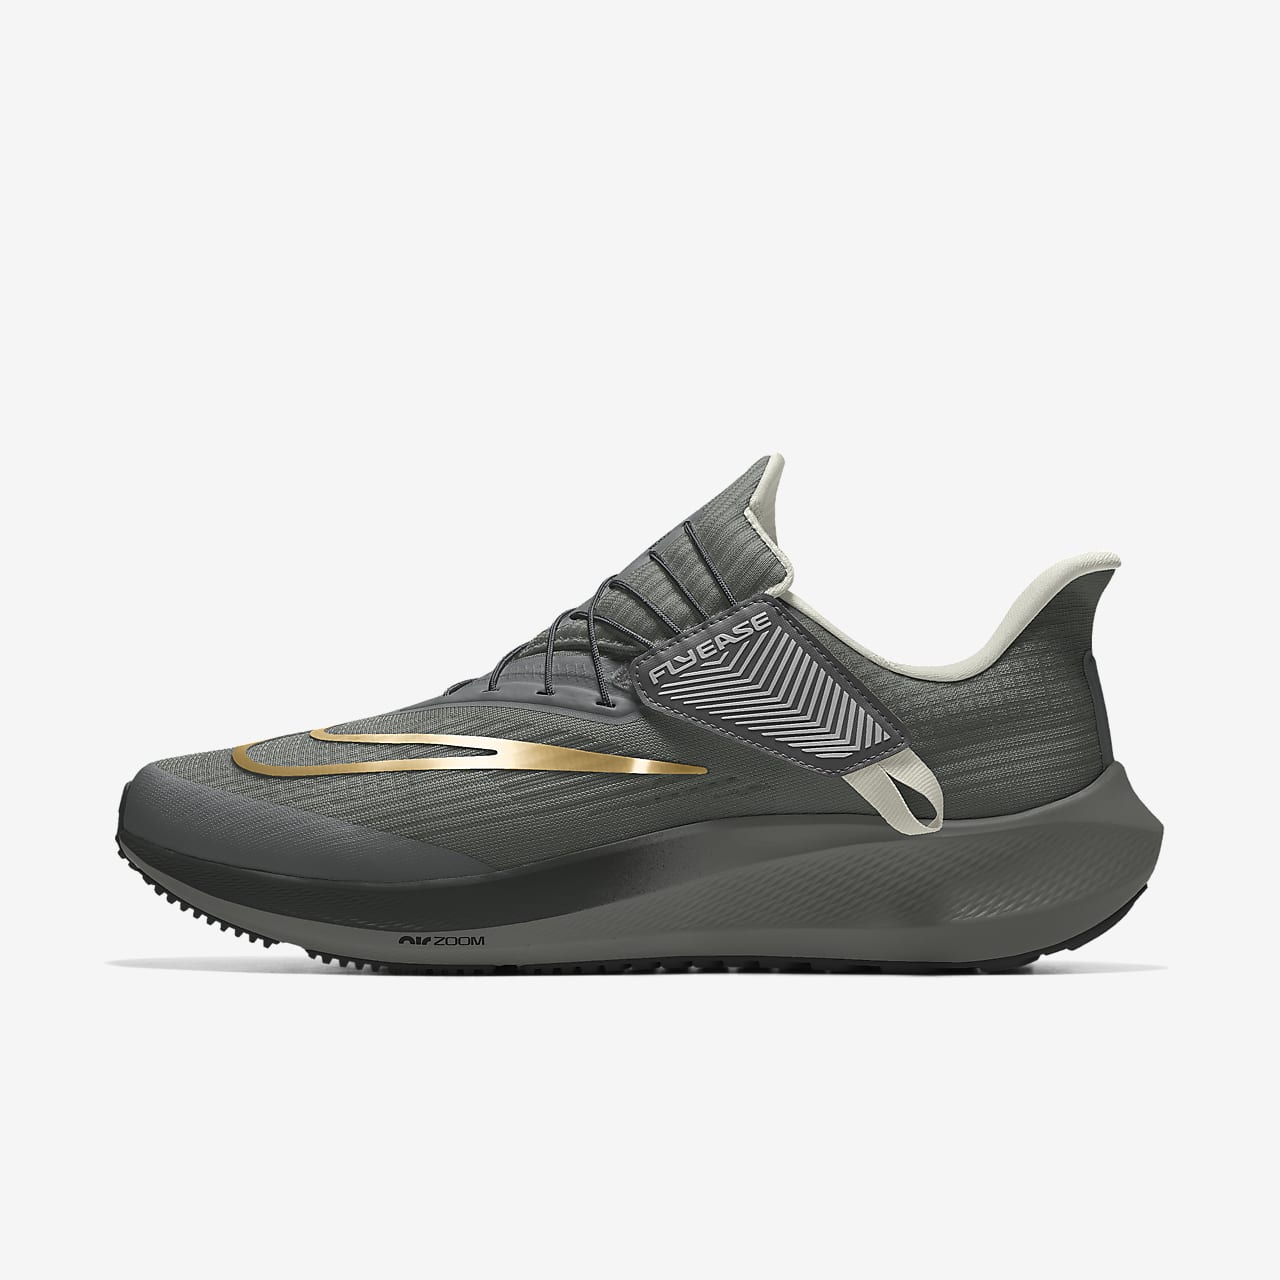 Pánské běžecké silniční boty Nike Air Zoom Pegasus FlyEase By You upravené podle tebe se snadným obouváním a zouváním